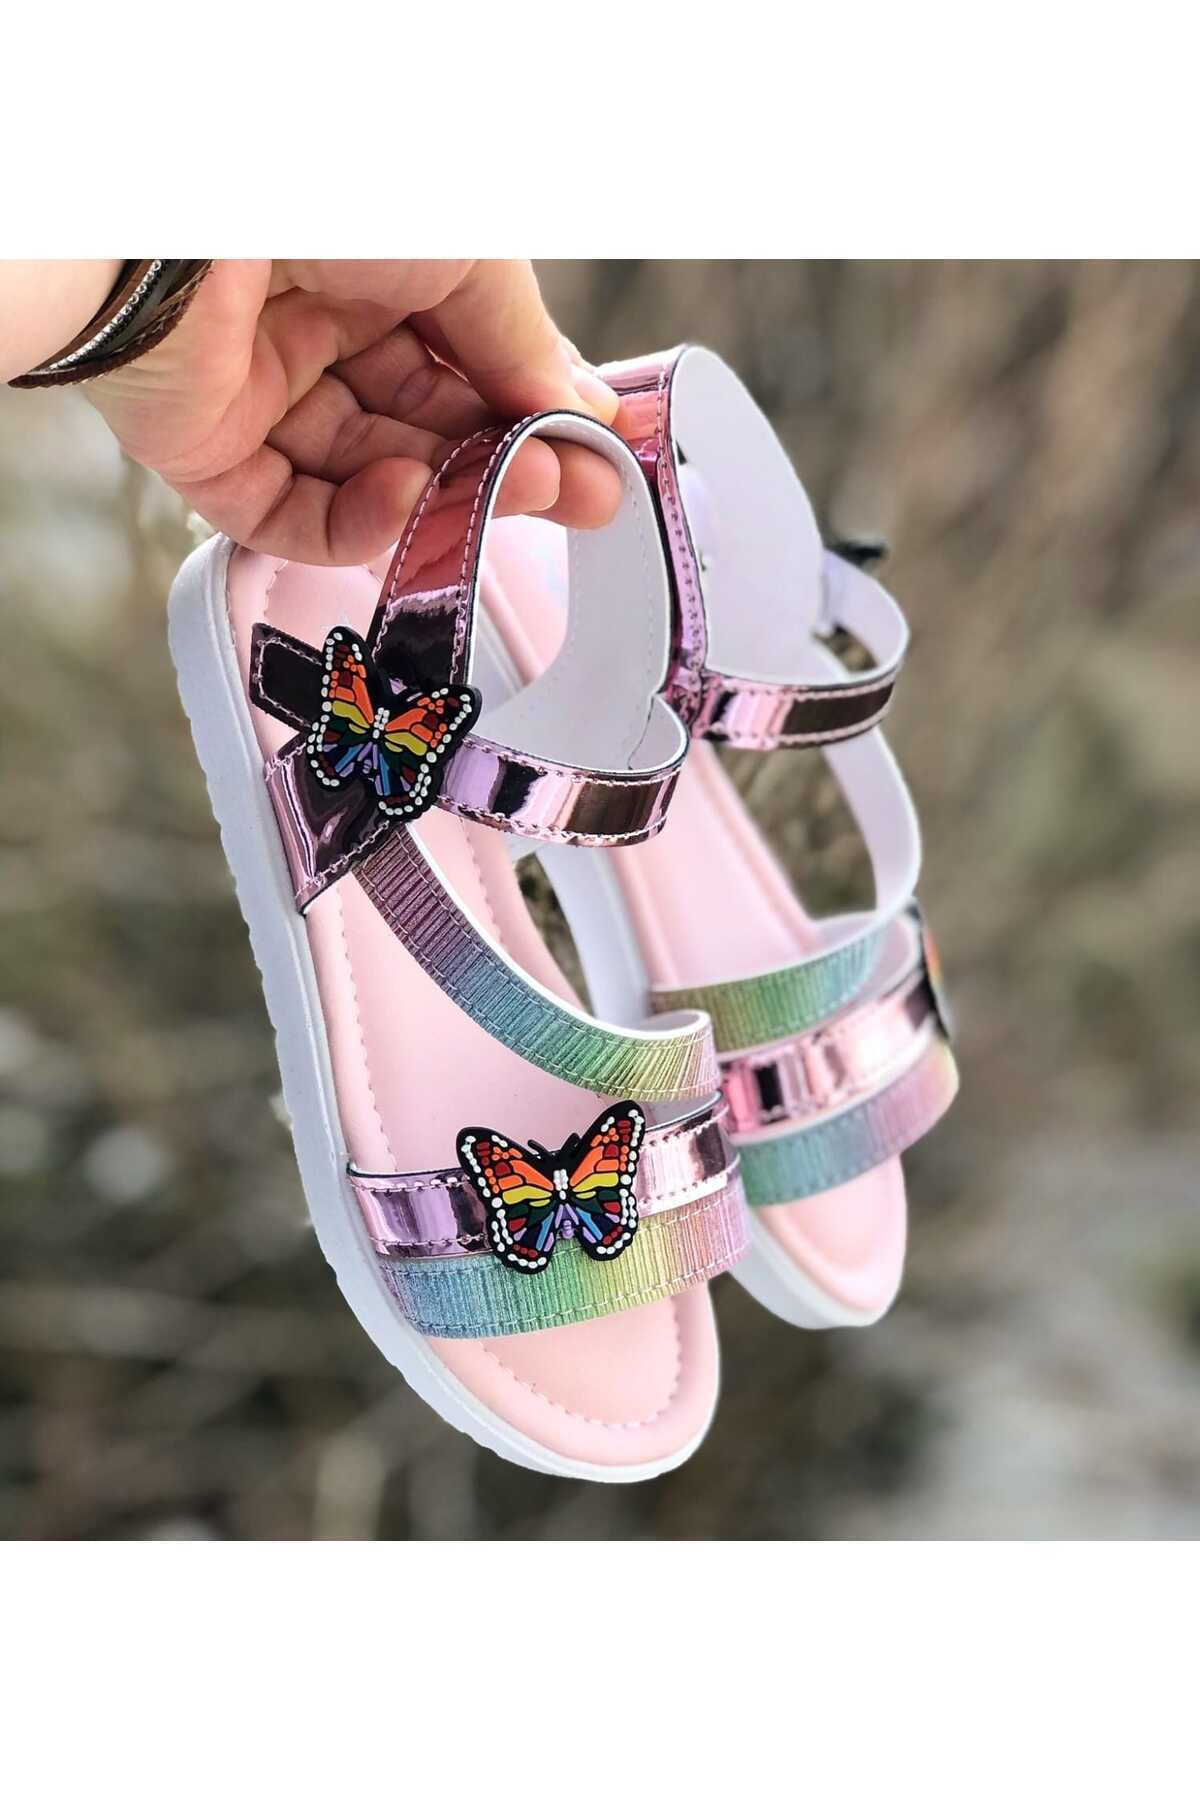 Pandalina Çocuk sandalet cırt cırtlı  kelebek figürlü kaydırmaz phylon(hafif) taban  yazlık çocuk ayakkabısı